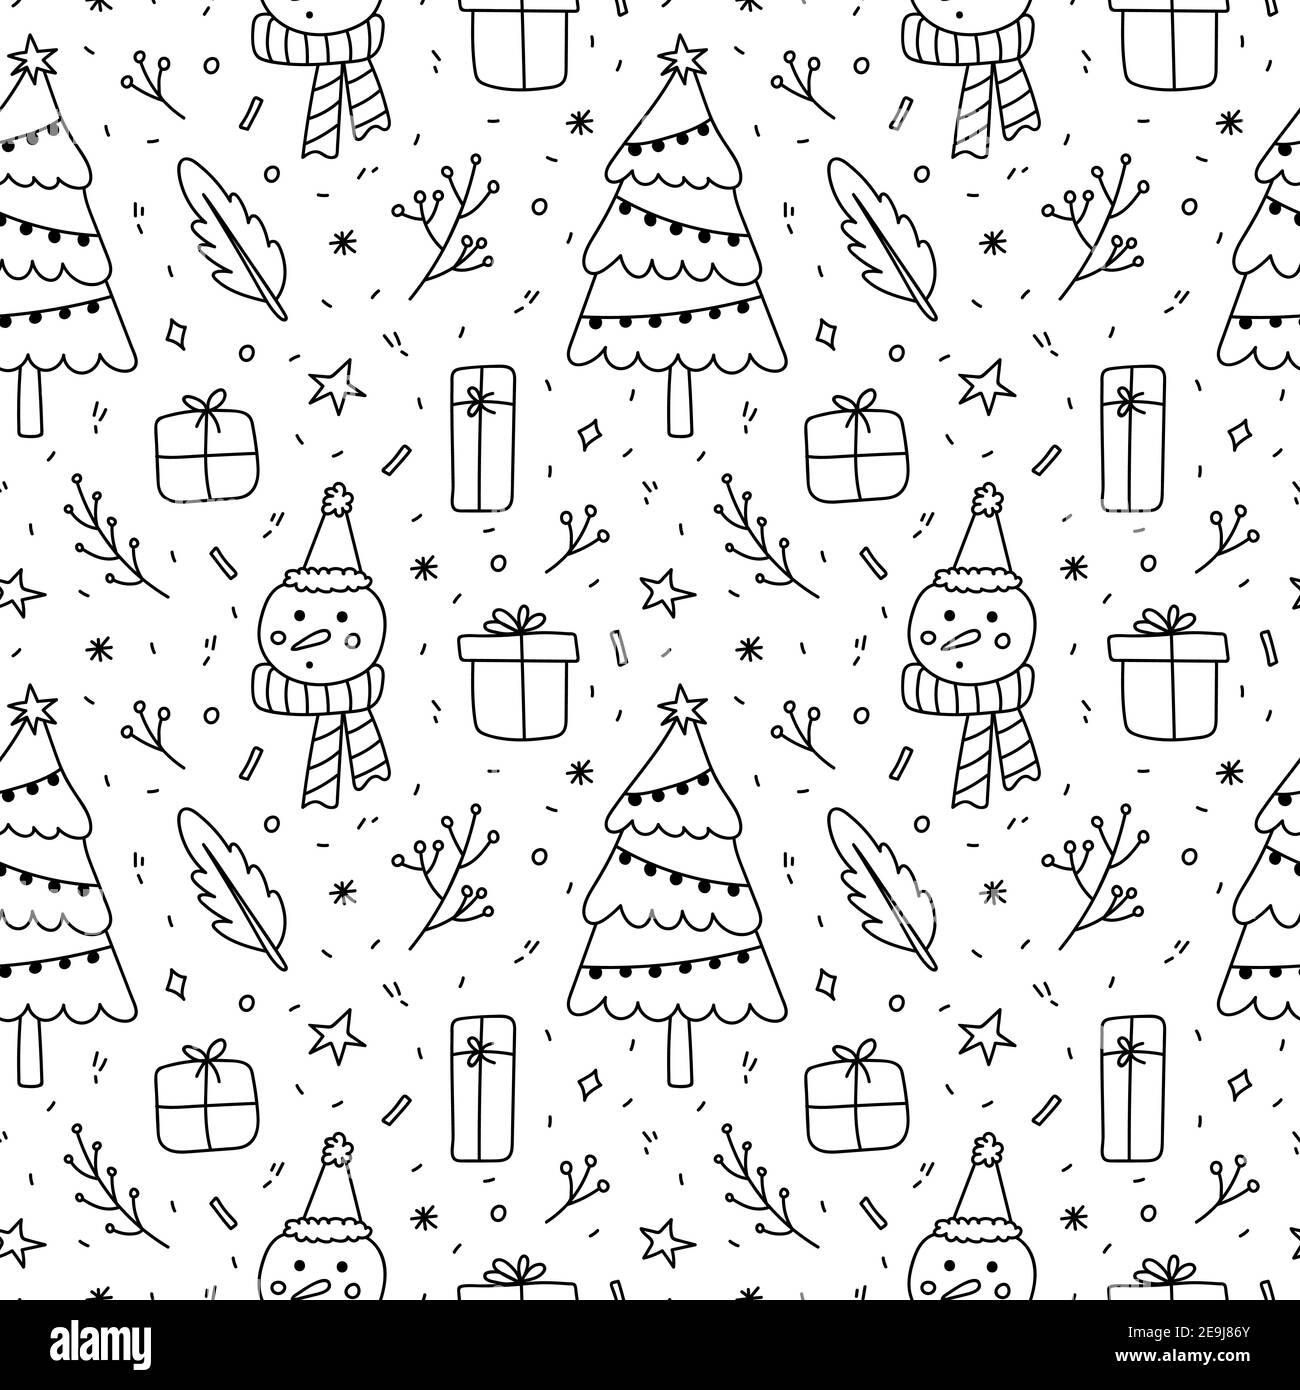 Niedliches weihnachtliches Nahtmuster. Weihnachtsbaum mit Girlande, Schneemann, Geschenke, Zweige und Schneeflocken. Vektor-handgezeichnete Illustration im Doodle-Stil. Stock Vektor